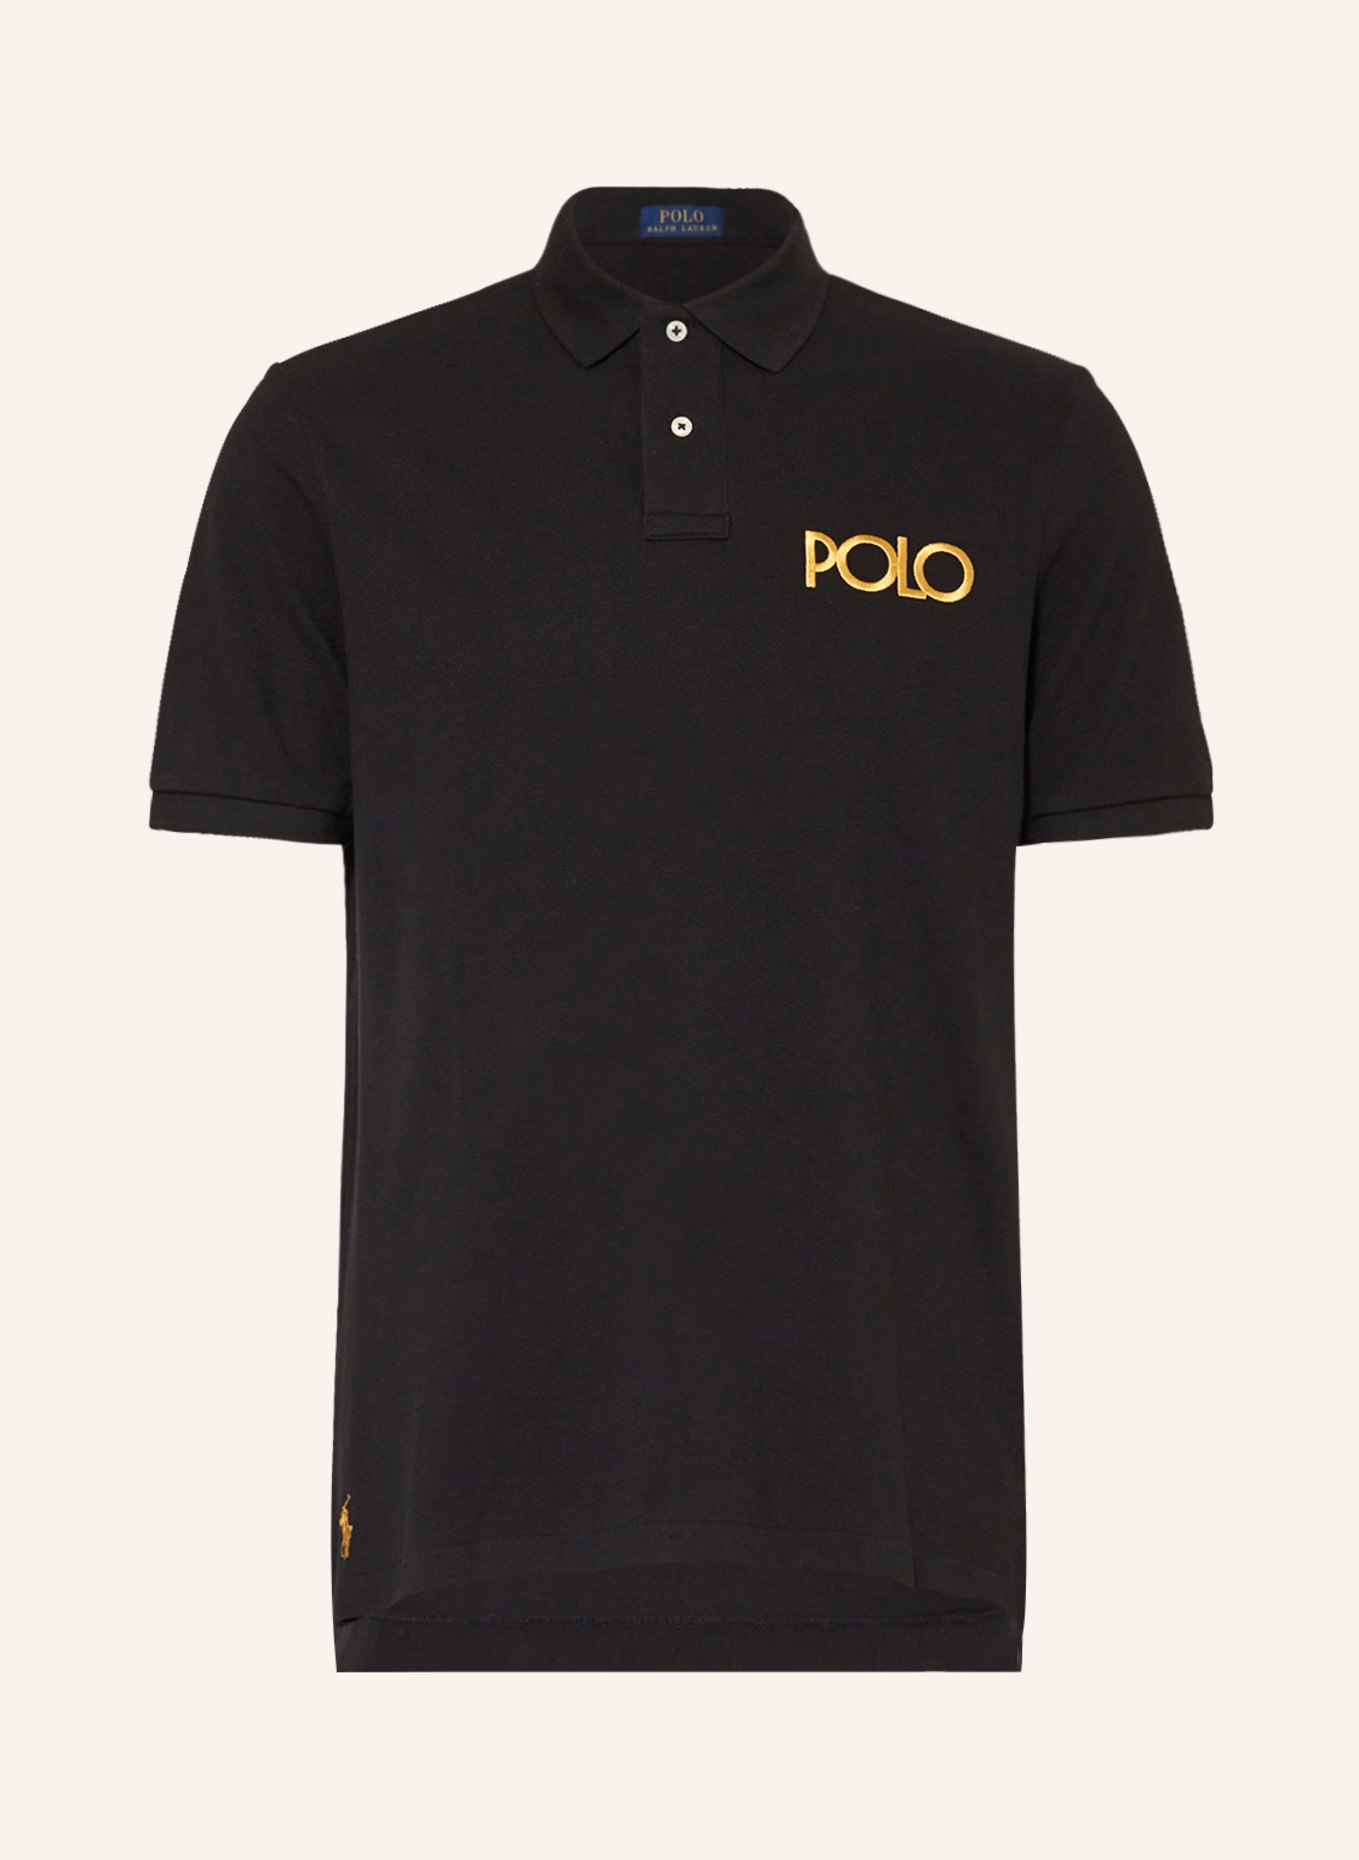 POLO RALPH LAUREN Piqué-Poloshirt Classic Fit, Farbe: DUNKELBLAU (Bild 1)